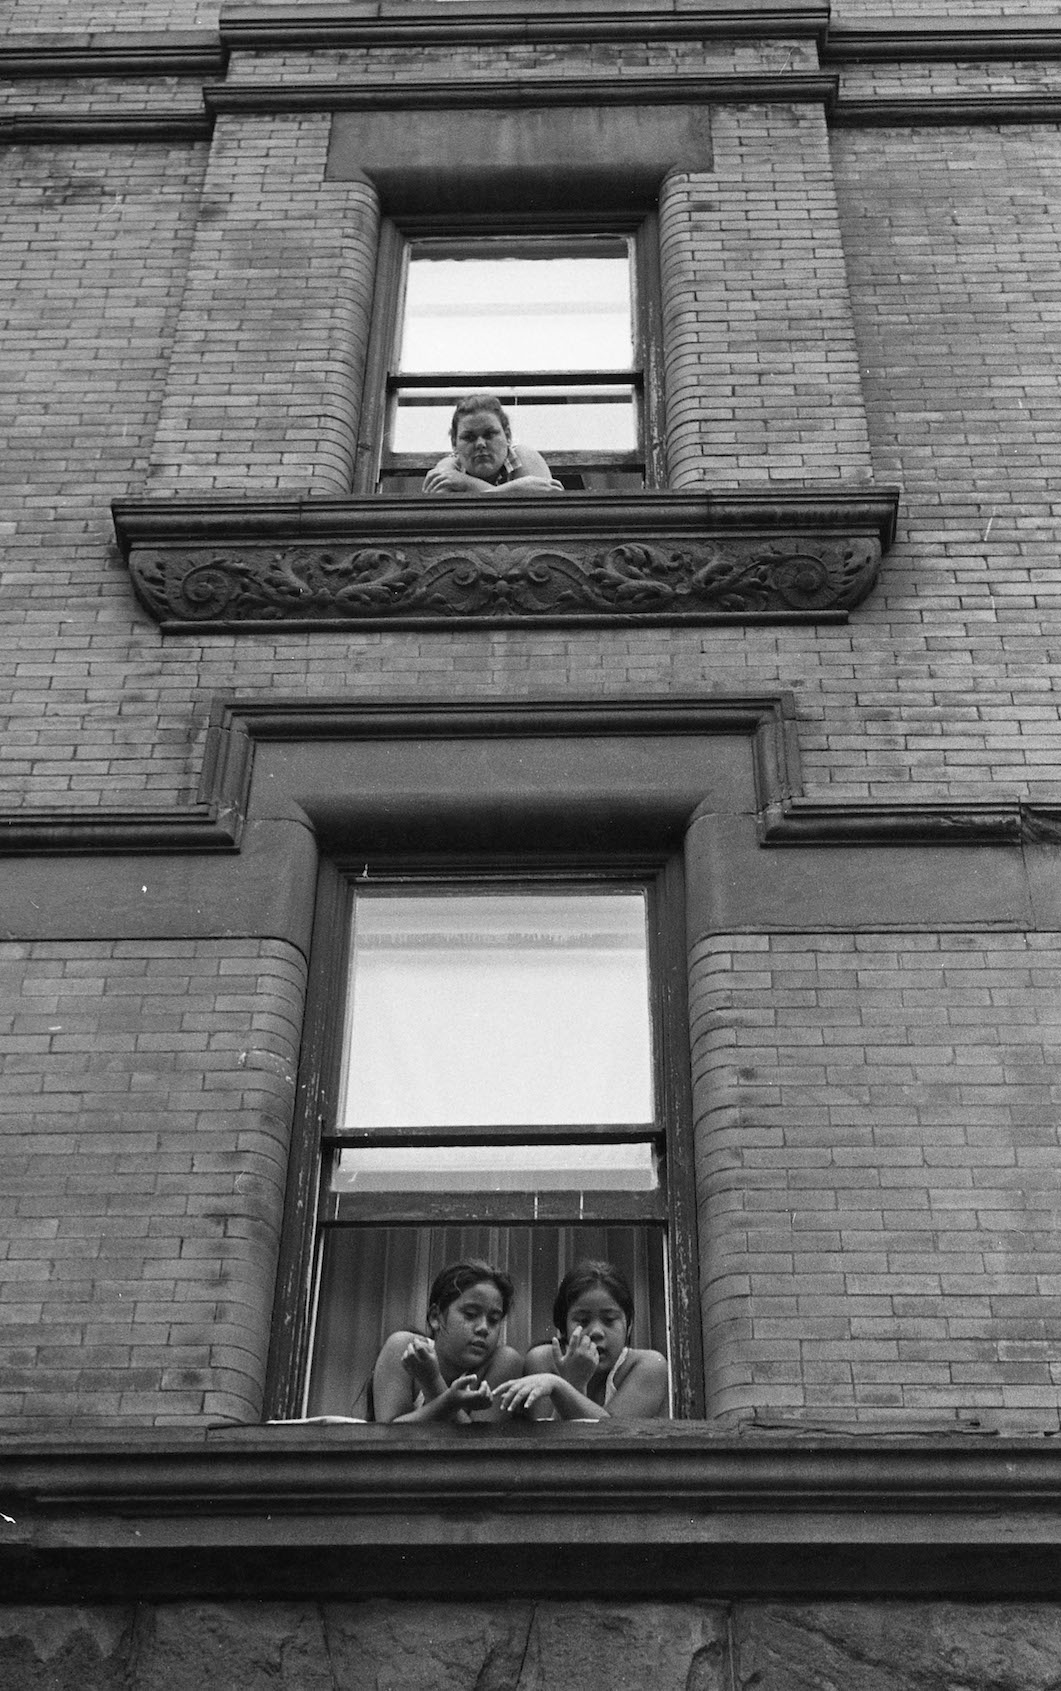 Three People in Window